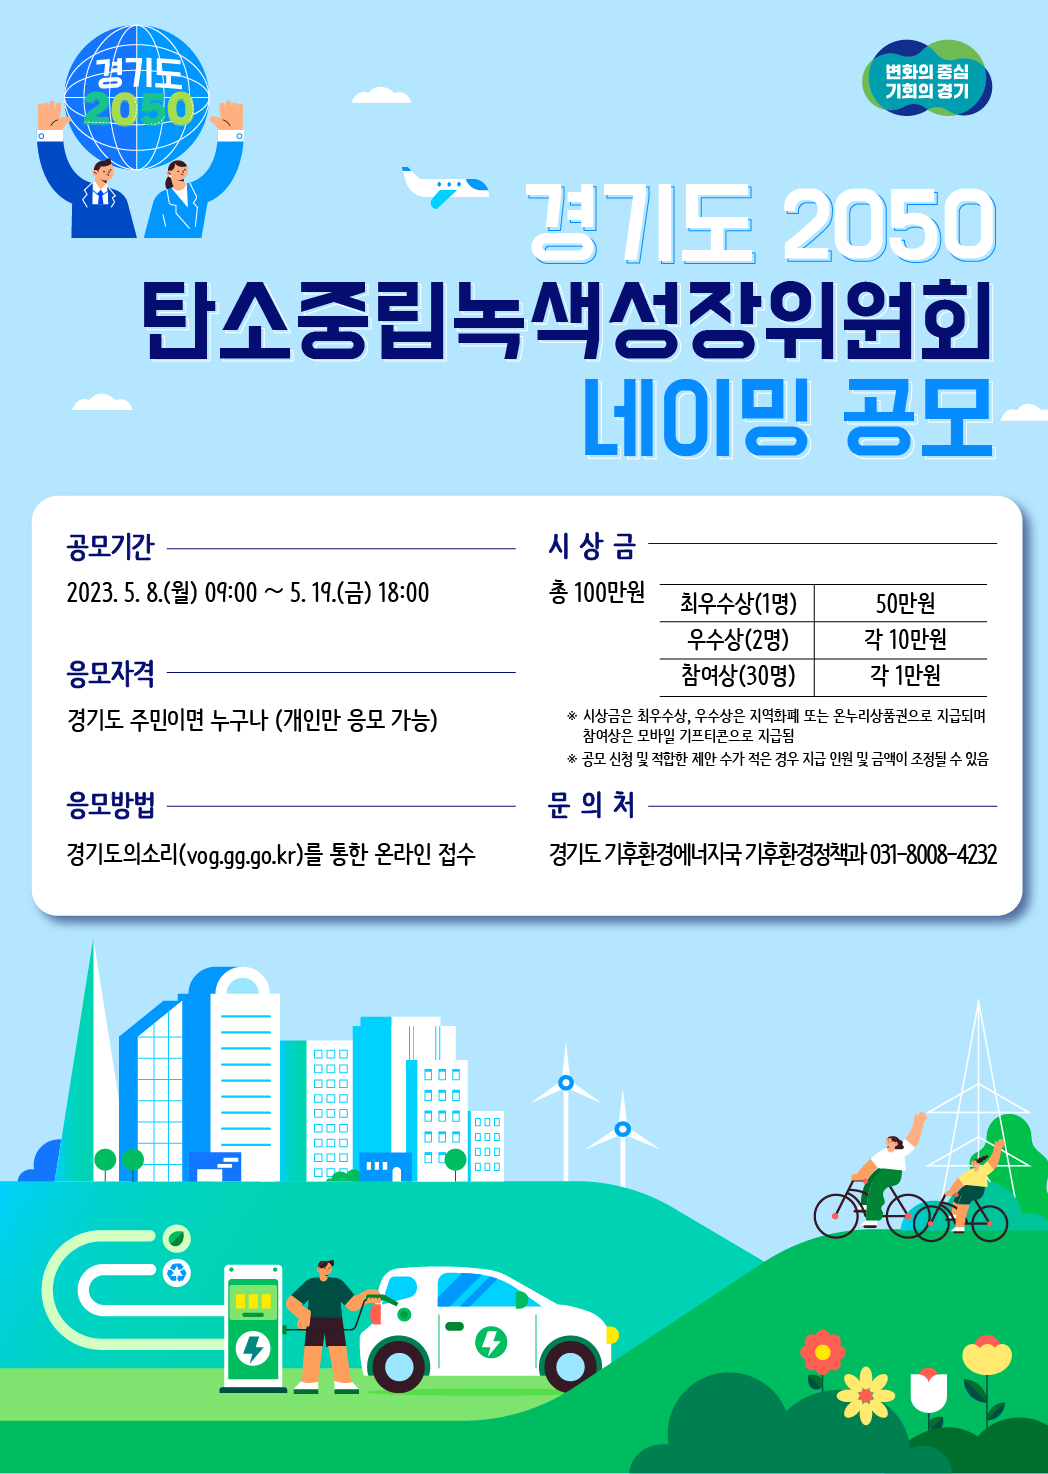 「경기도 2050 탄소중립녹색성장위원회 네이밍」 공모